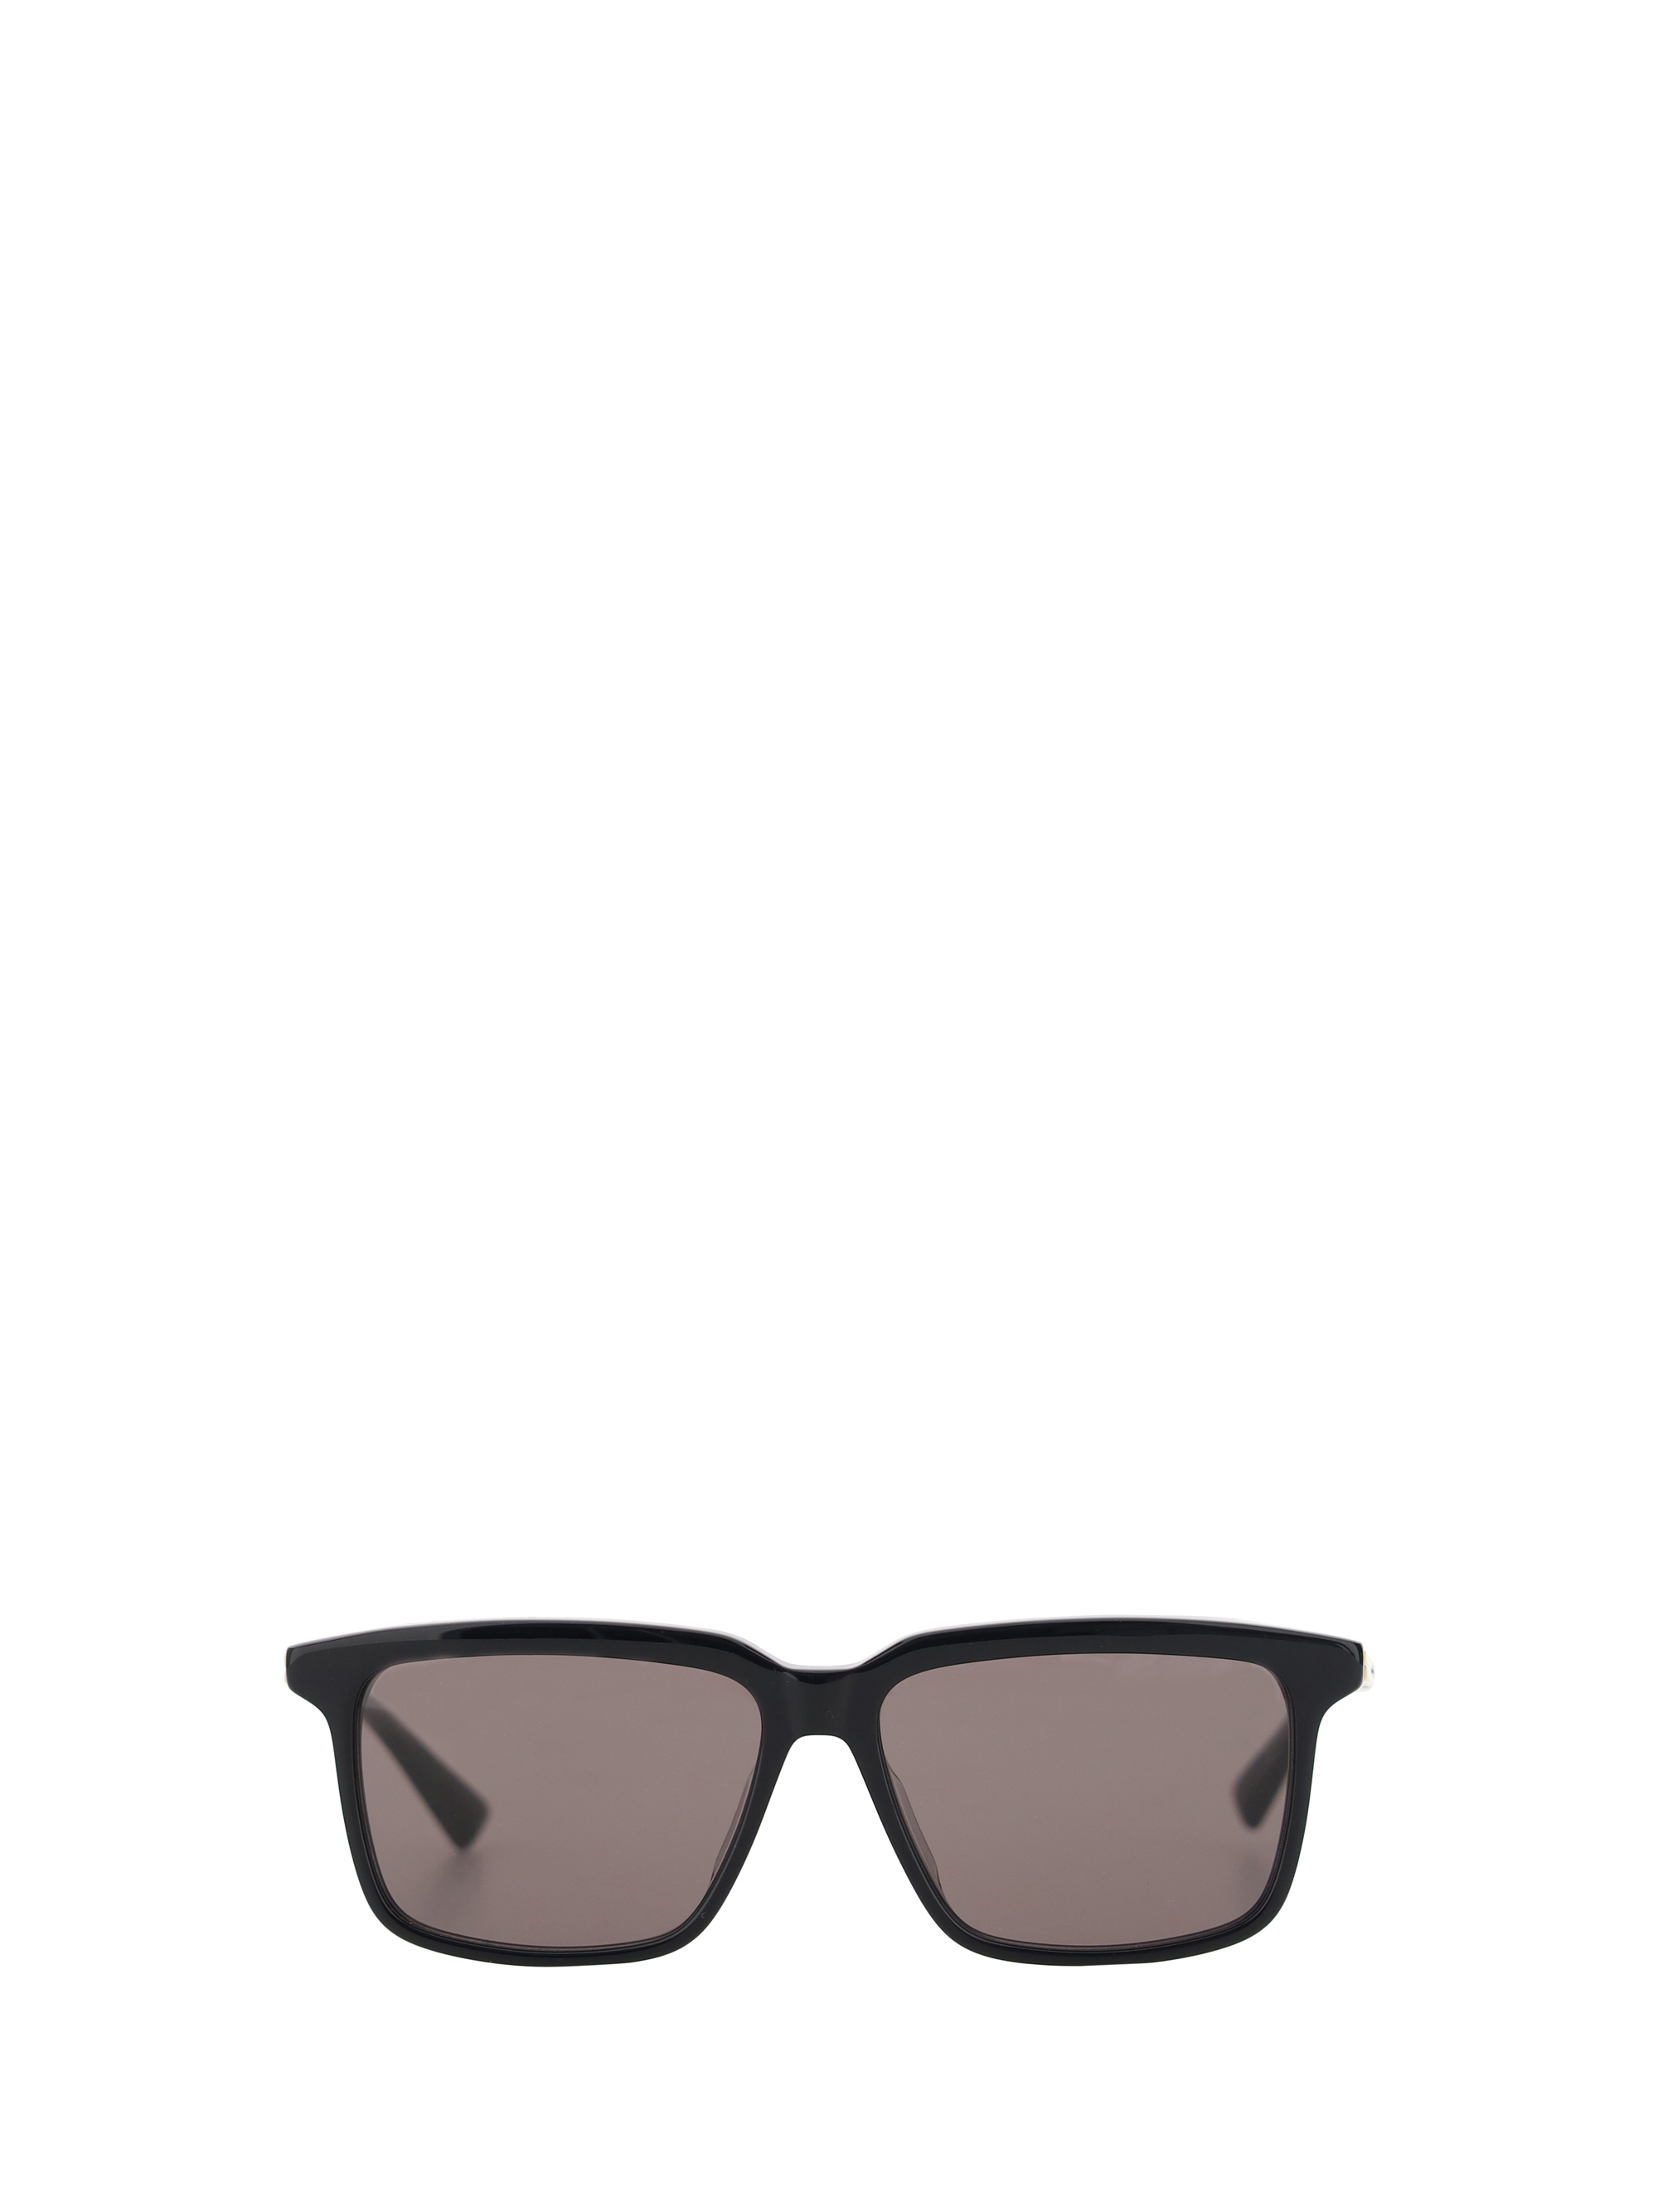 Bottega Veneta Sunglasses In Black/grey